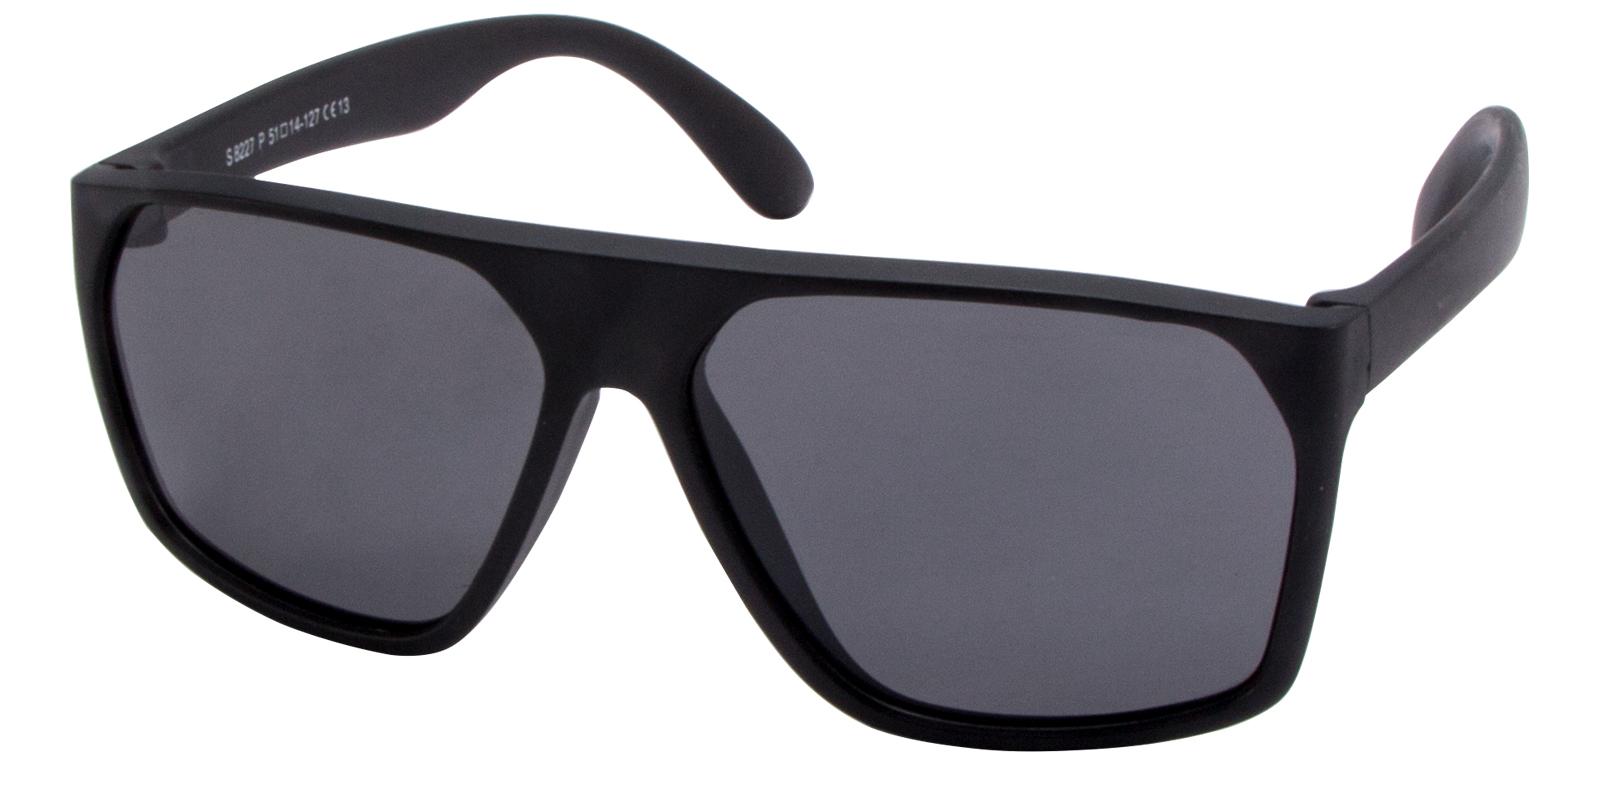 Sesamo Black TR Sunglasses , UniversalBridgeFit Frames from ABBE Glasses